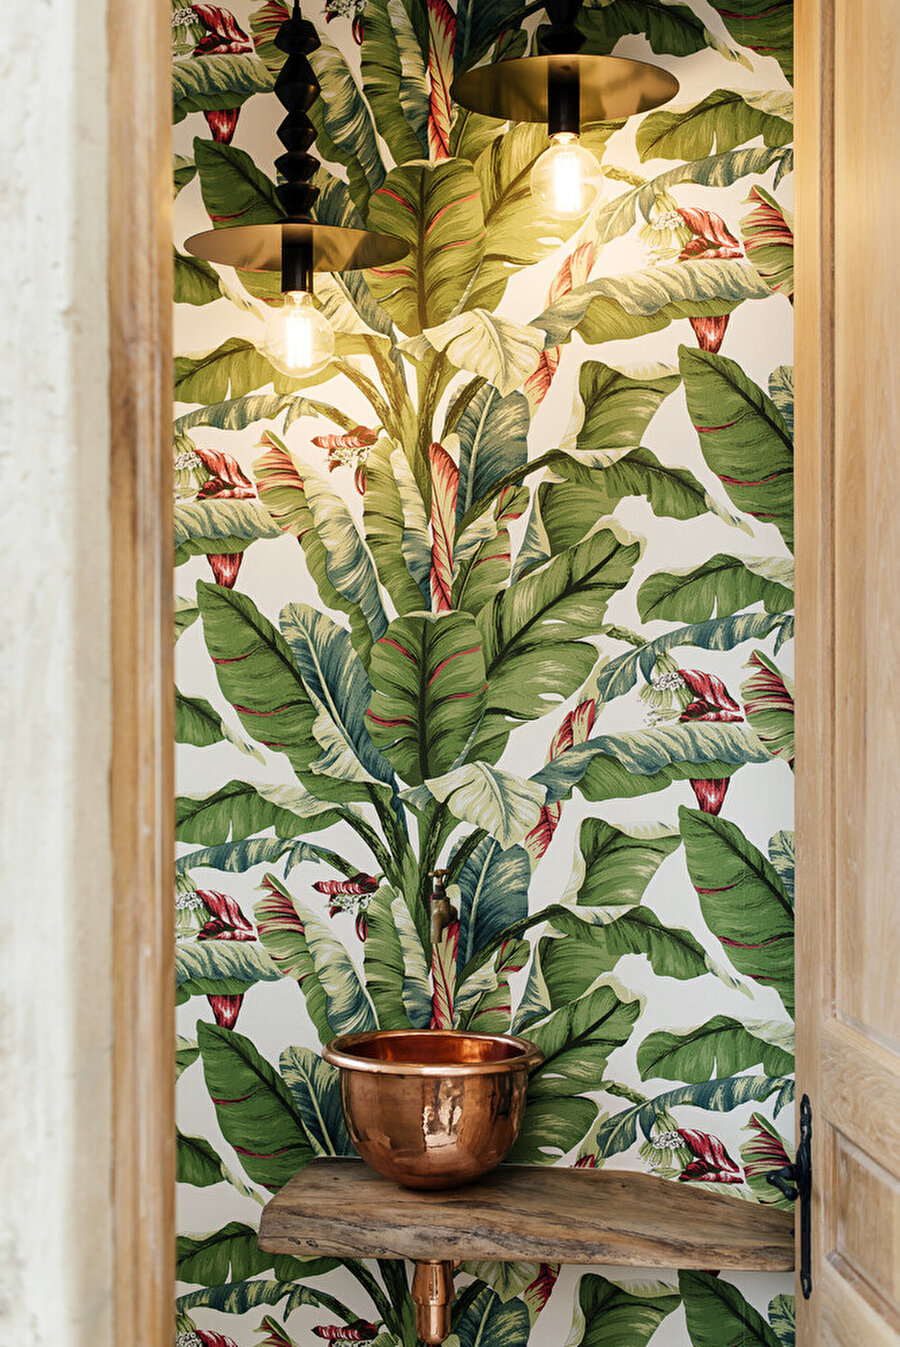 Banyo, botanik desenli, renkli duvar kağıtlarıyla kaplı.